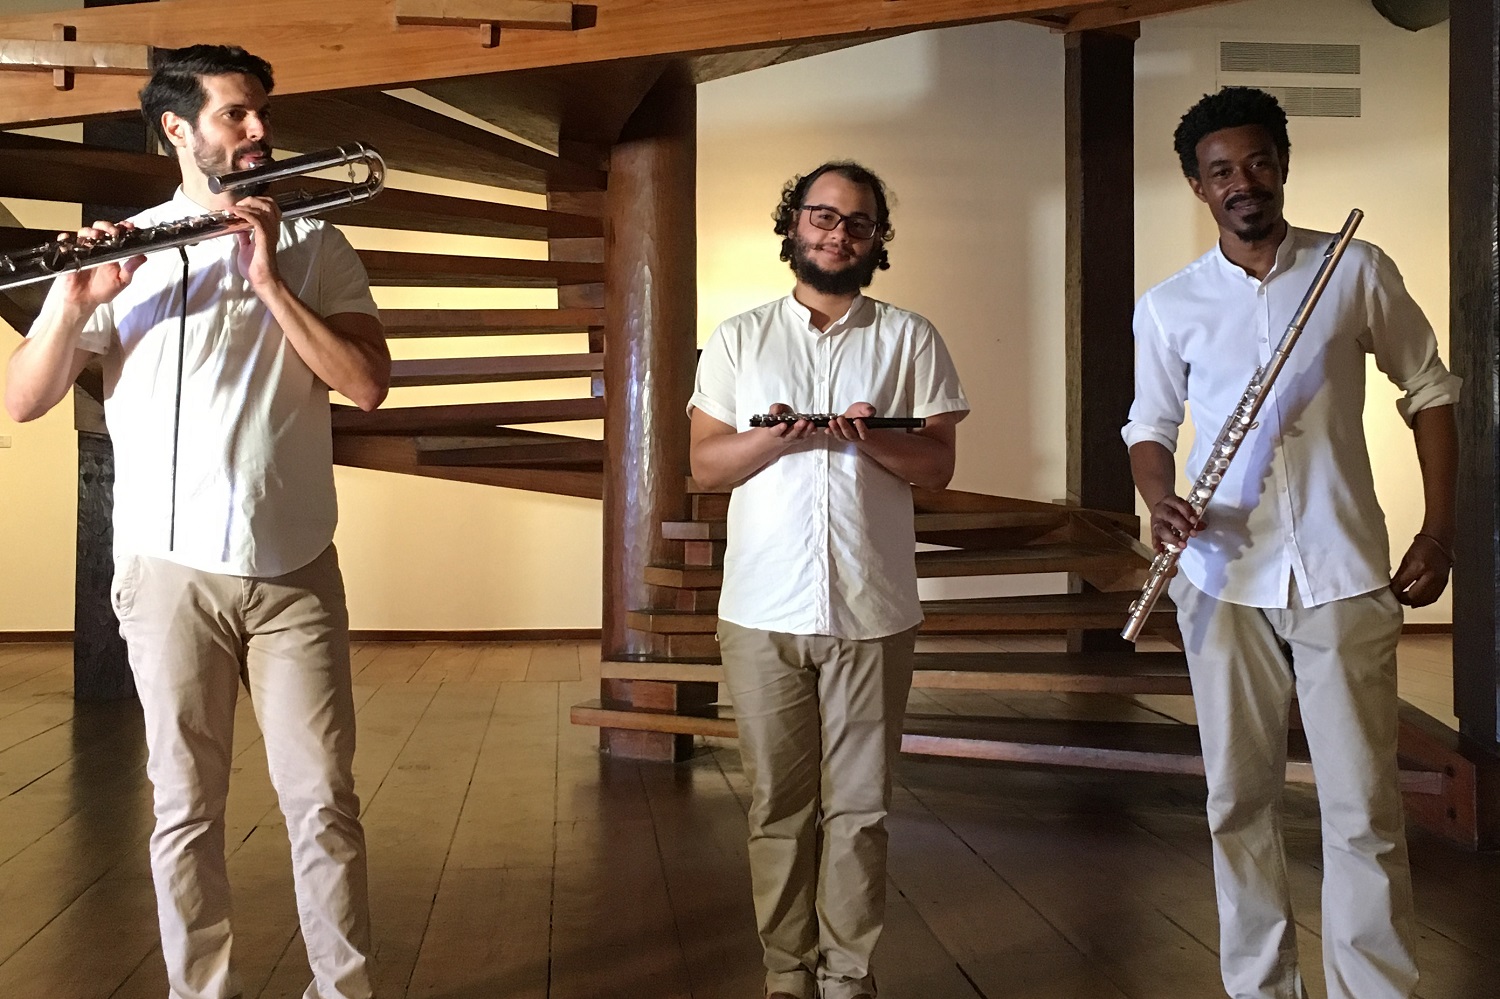 O concerto tem como objetivo contribuir com o fortalecimento e difusão da cultura da flauta transversal